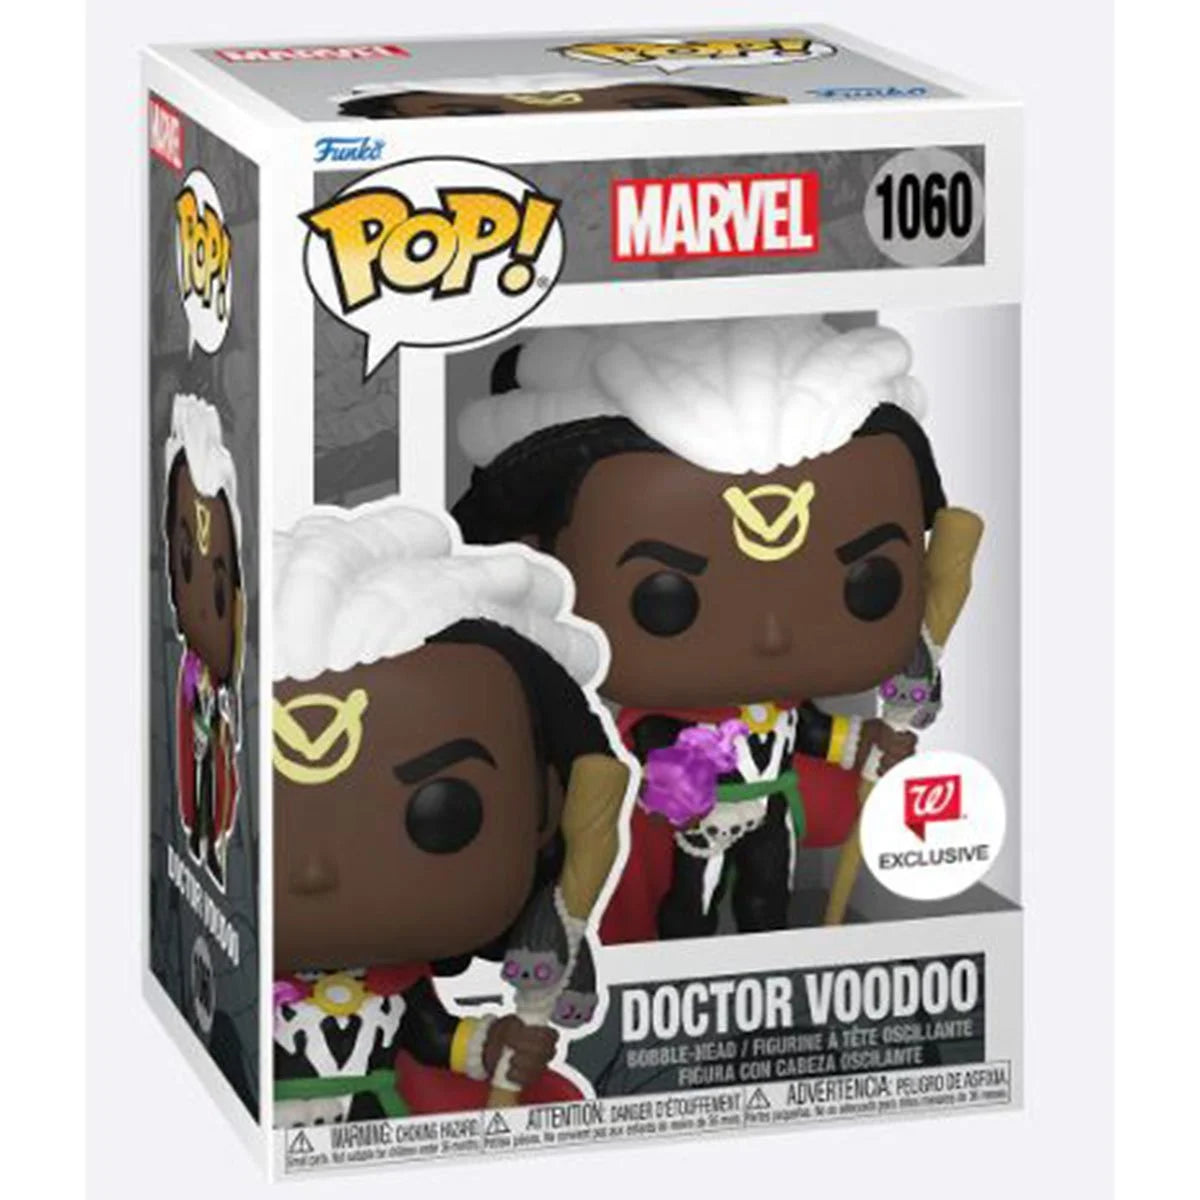 Marvel Doctor Voodoo Pop! Vinyl Figure - Exclusive